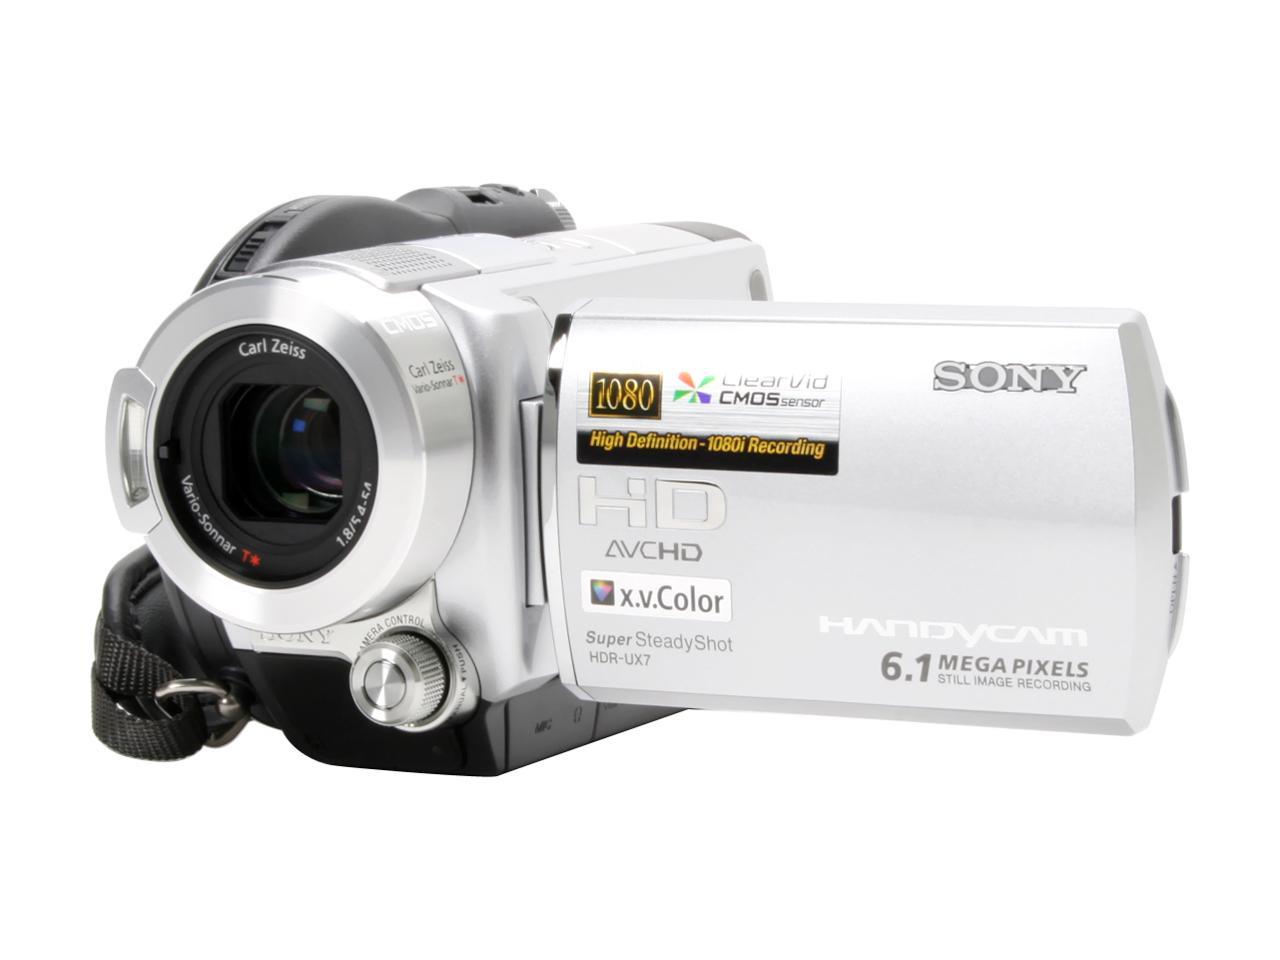 Reparación posible Admisión Aplicado SONY HDR-UX7 Silver AVCHD DVD Handycam Camcorder - Newegg.com